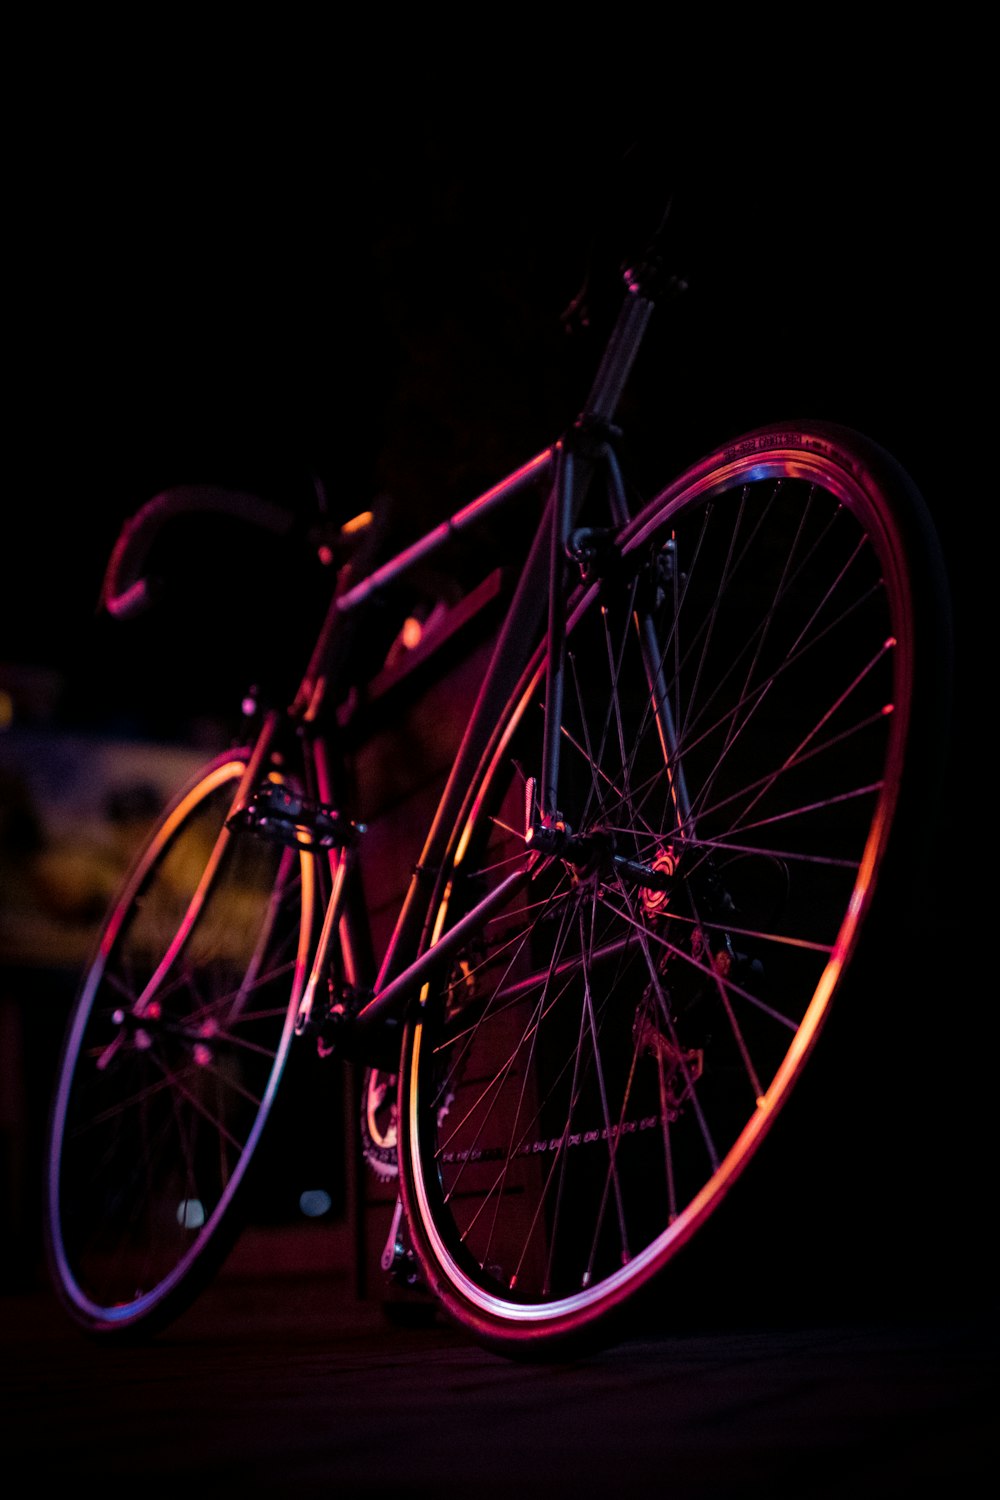 a close up of a bike in the dark